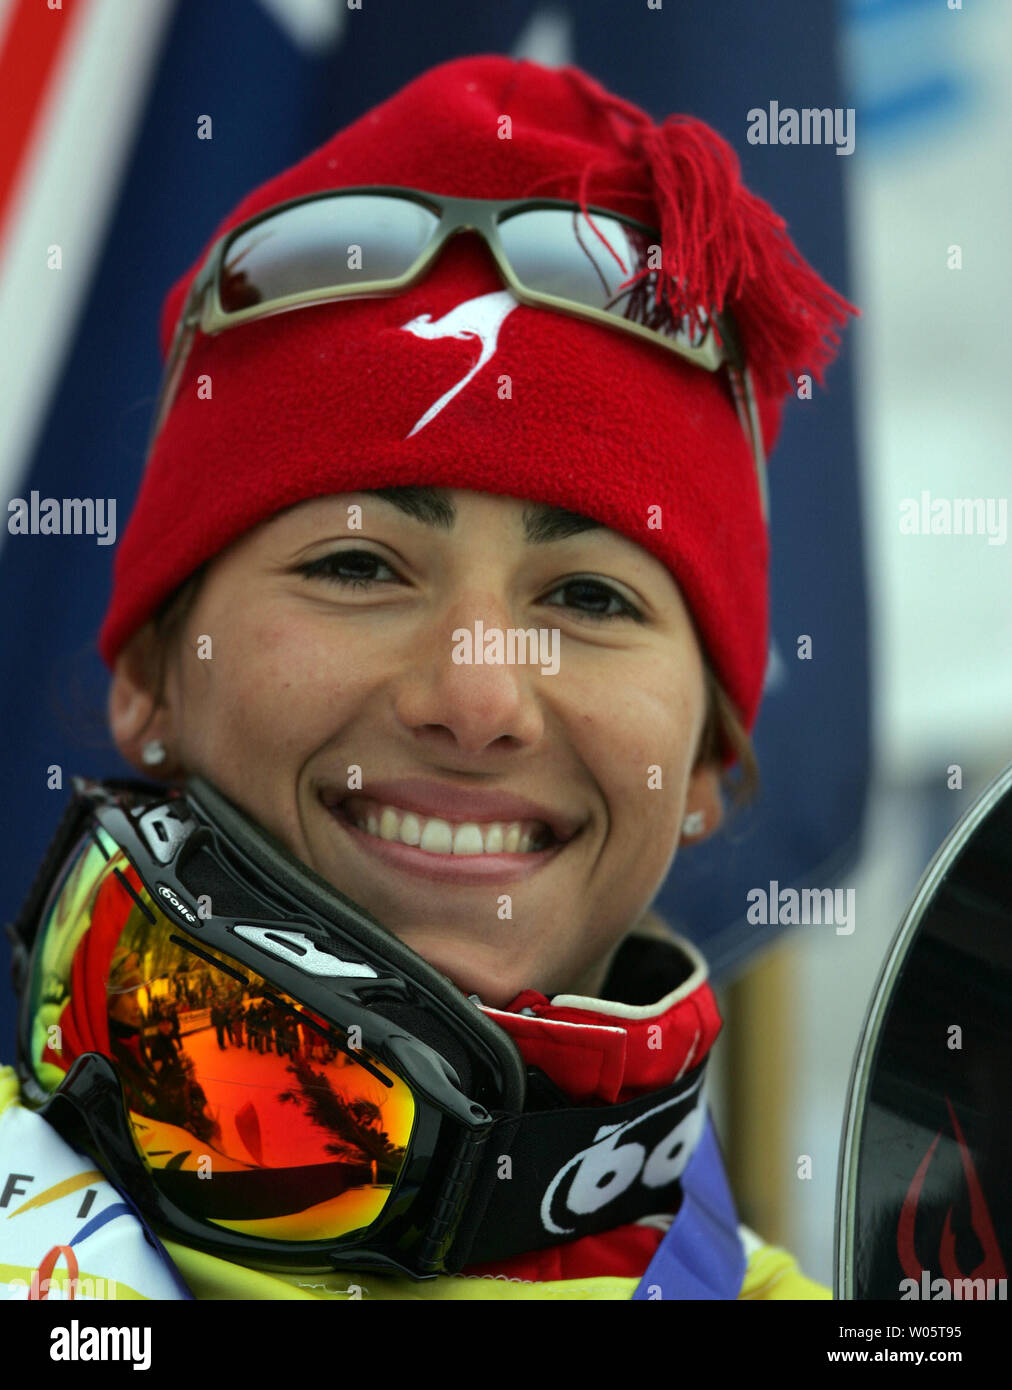 Australische Freestyle Skifahrer Lydia Ierodiaconou gewinnt die Goldmedaille in der Antennen bei der Ericsson Freestyle Ski World Cup am Mont Tremblant Kanada am 9. Januar 2005. Ihre Gesamtmenge von 194.18 Punkten festigt ihre Führung in der WM-Gesamtwertung für Frauen Luftakrobaten. (UPI Foto/Gnade Chiu) Stockfoto